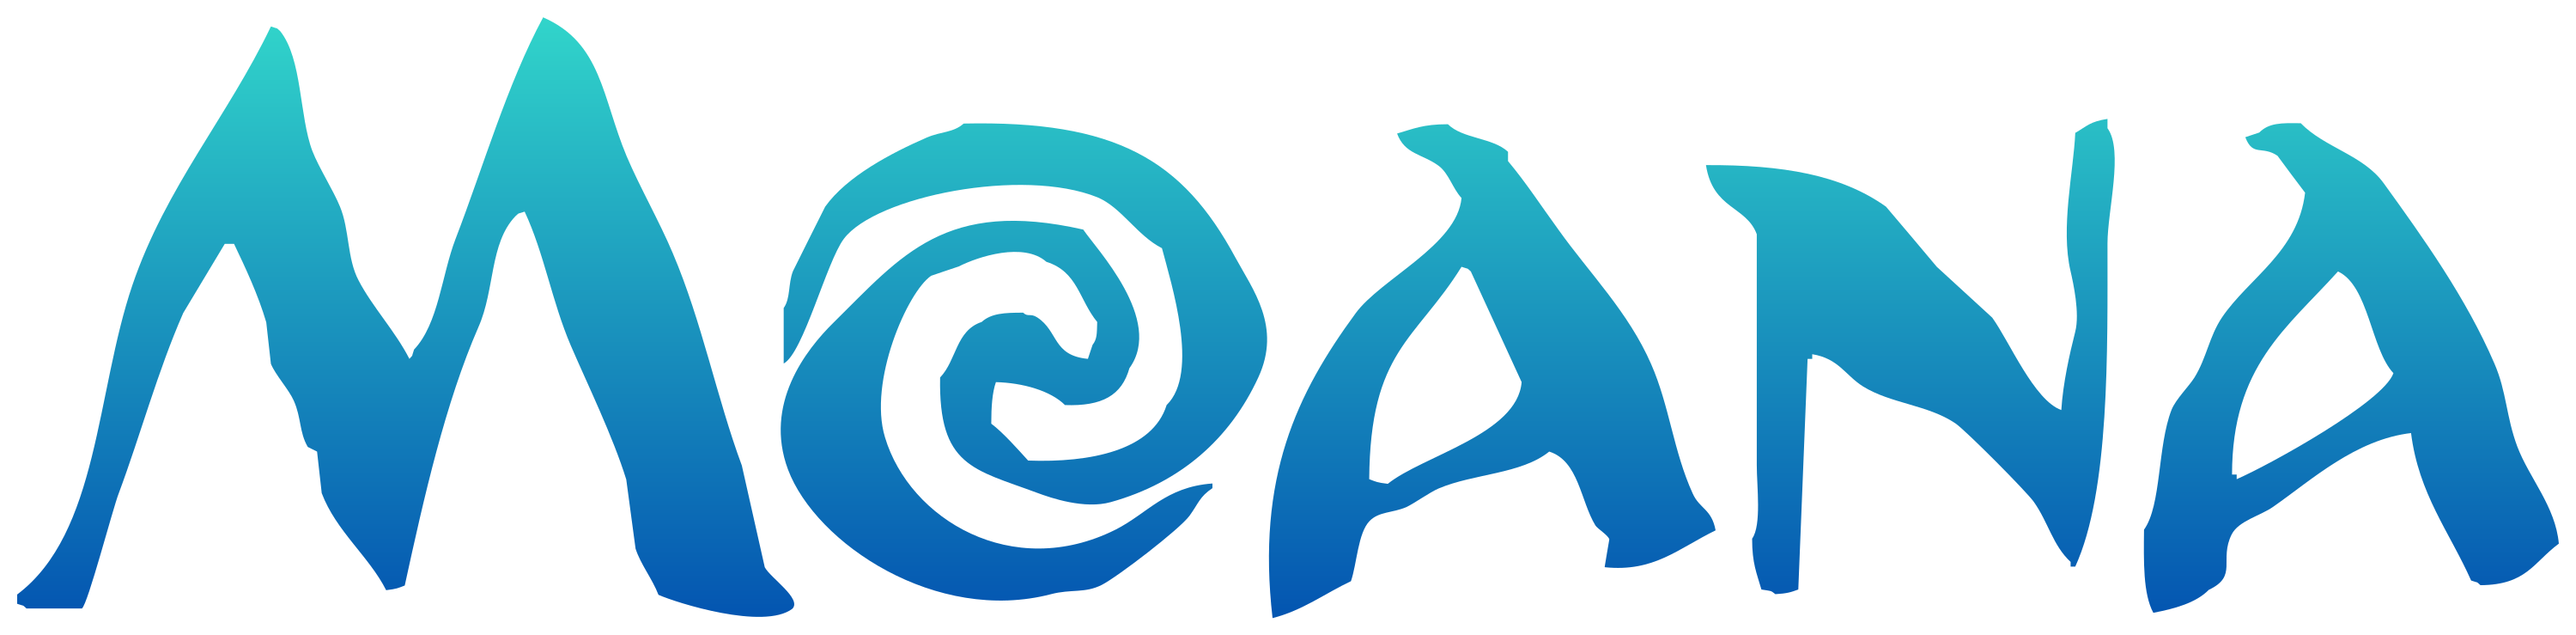 Logo Moana Free Download Image PNG Image